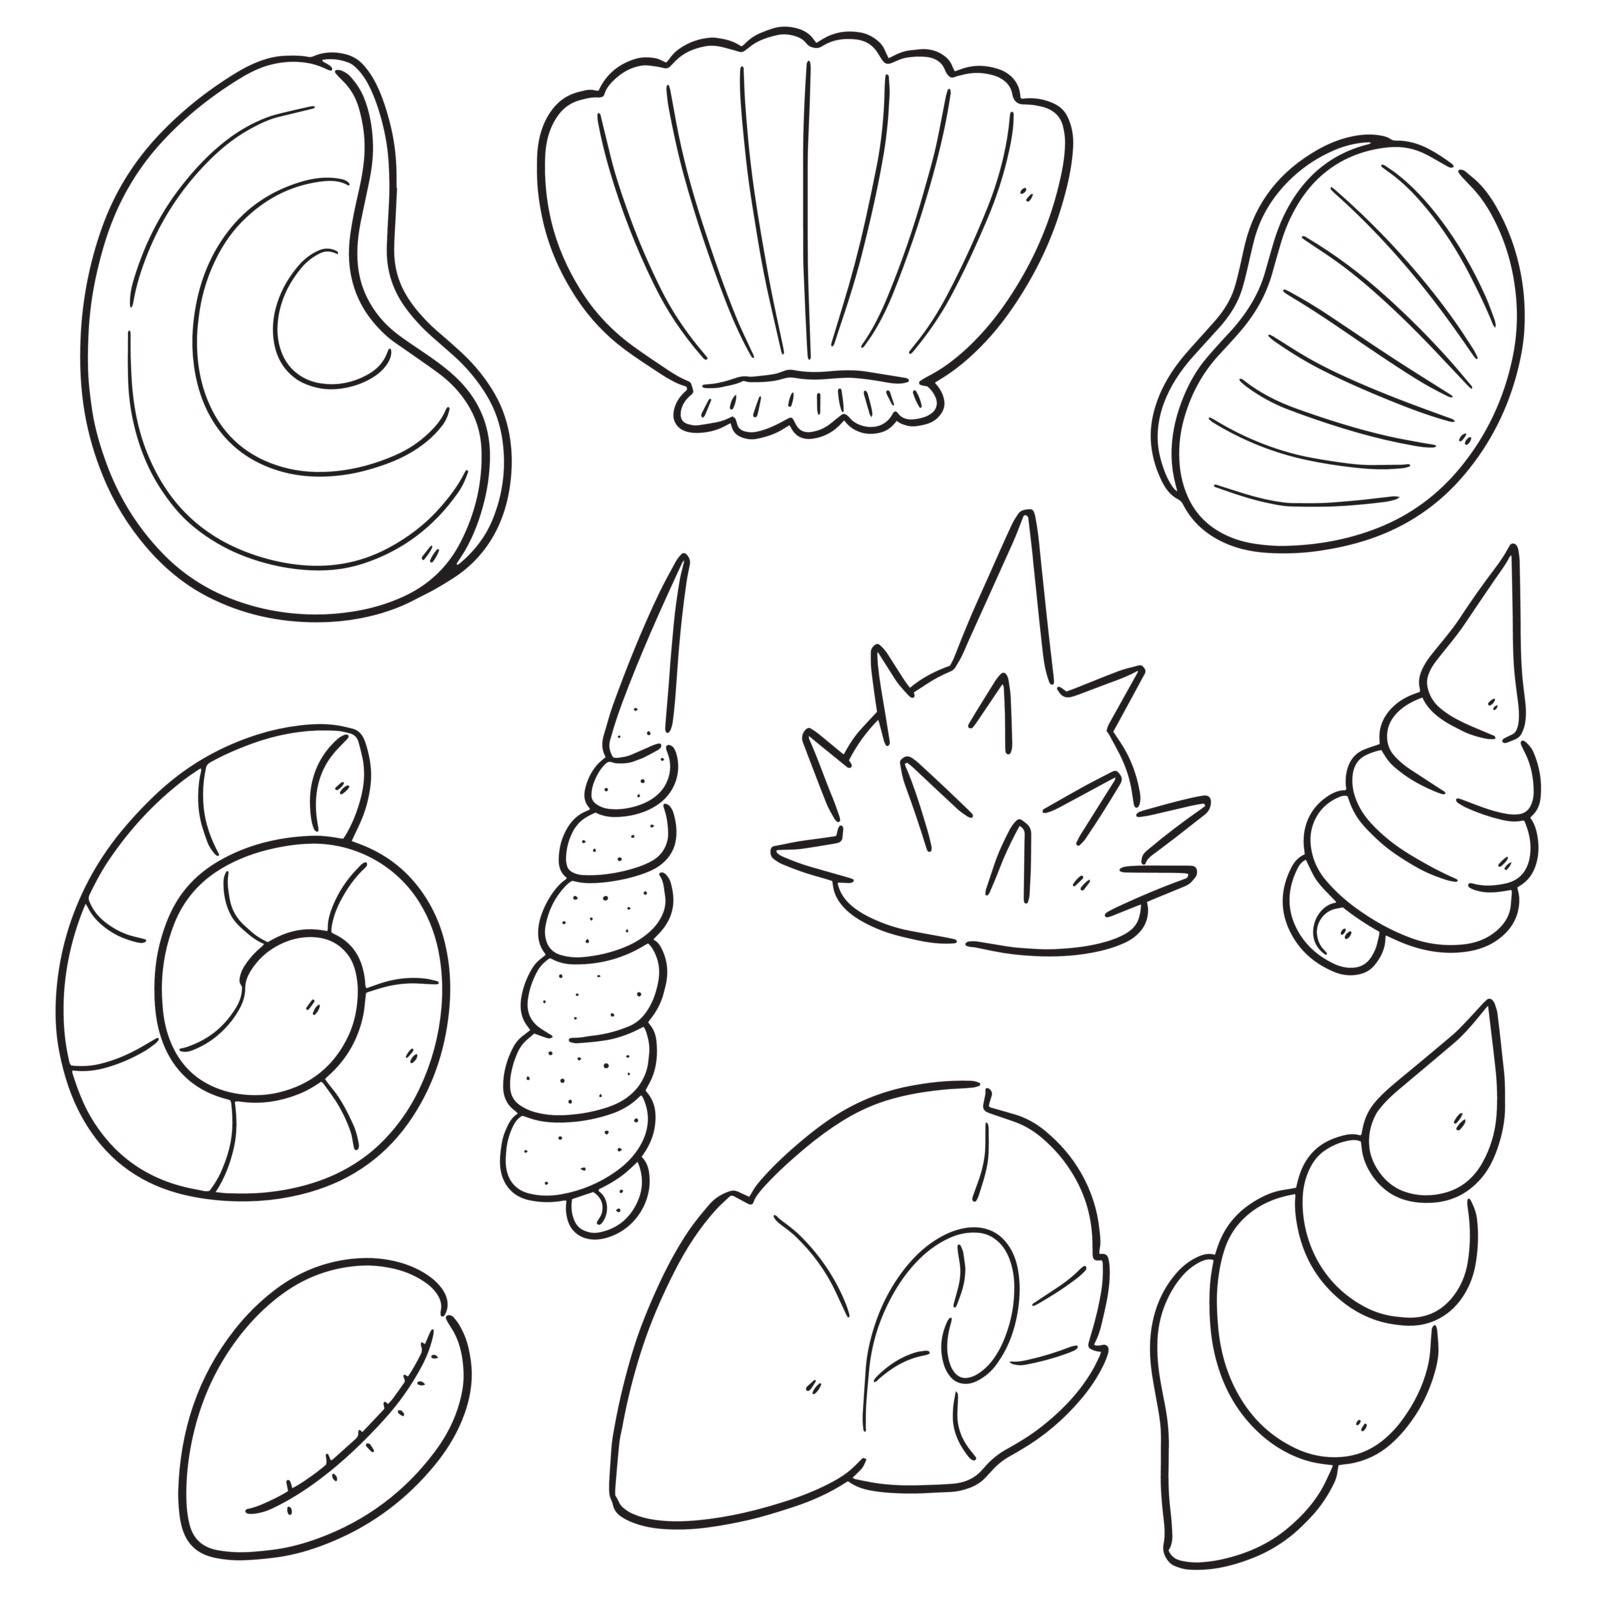 vector set of sea shell